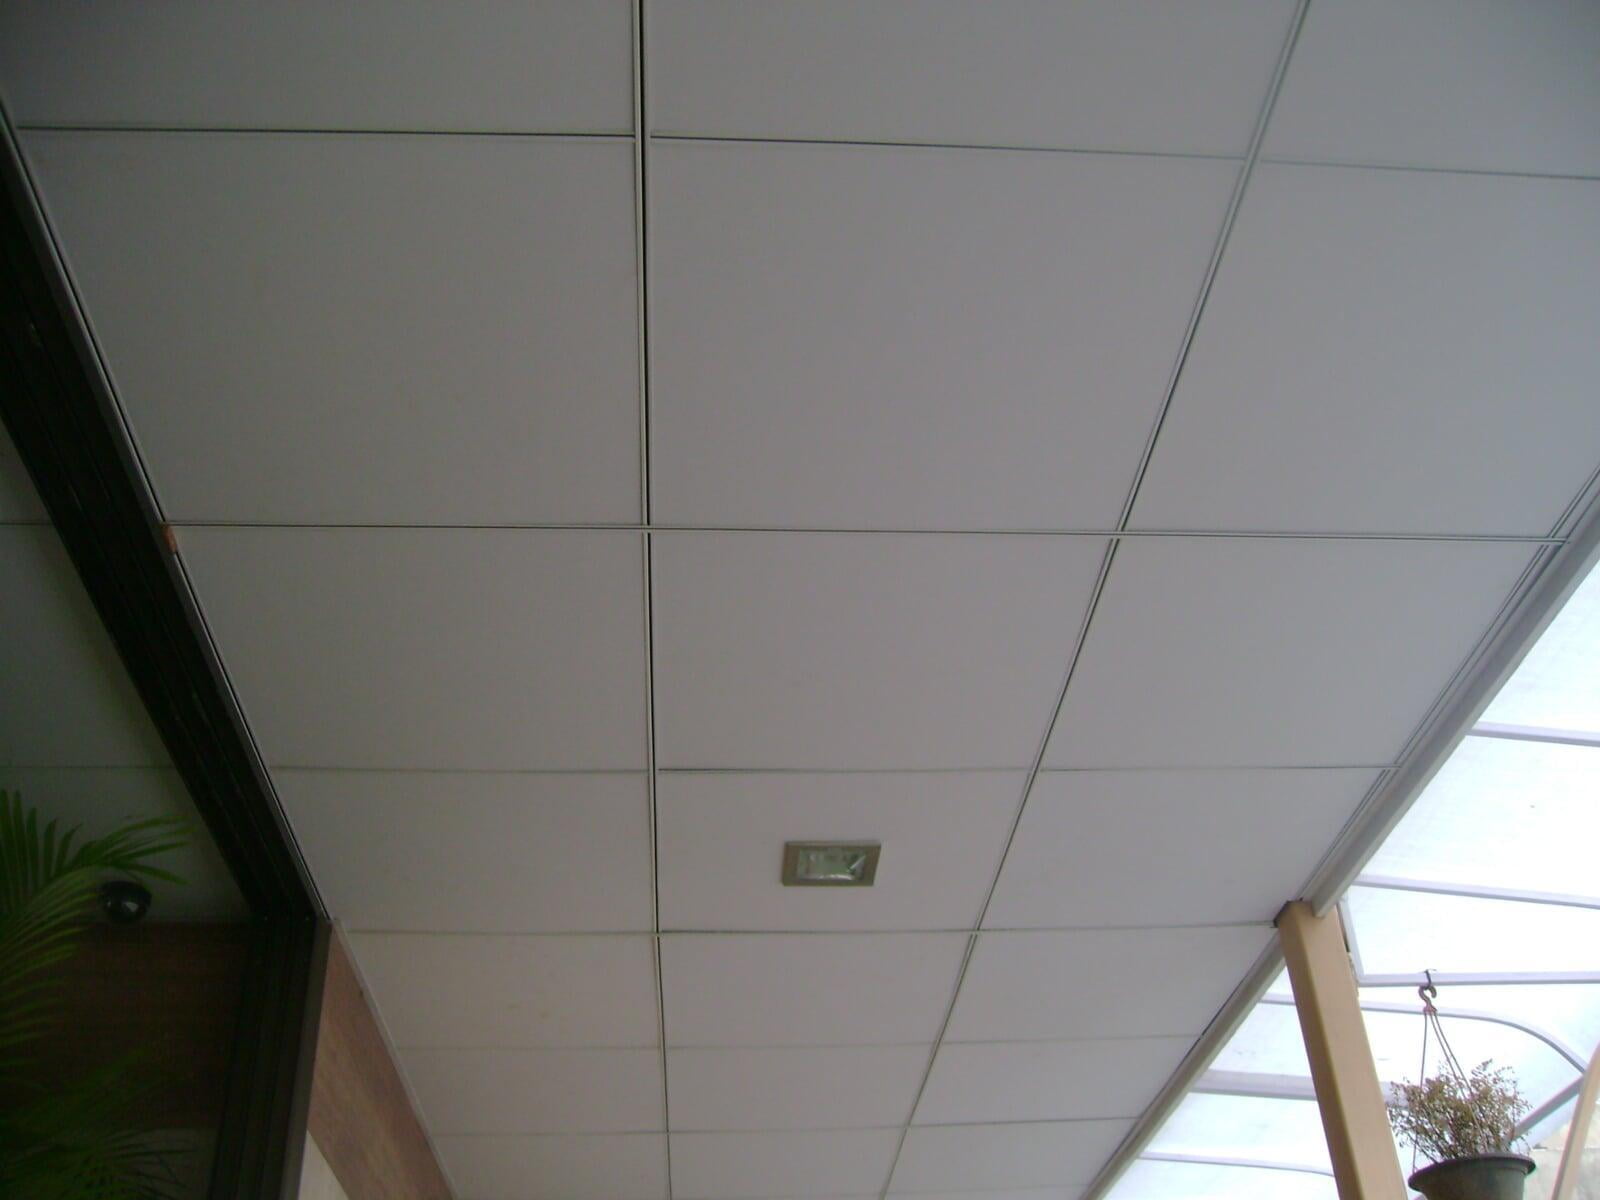 SHERA Ceiling Tile is a fibre cement, fire resistant ceiling tile